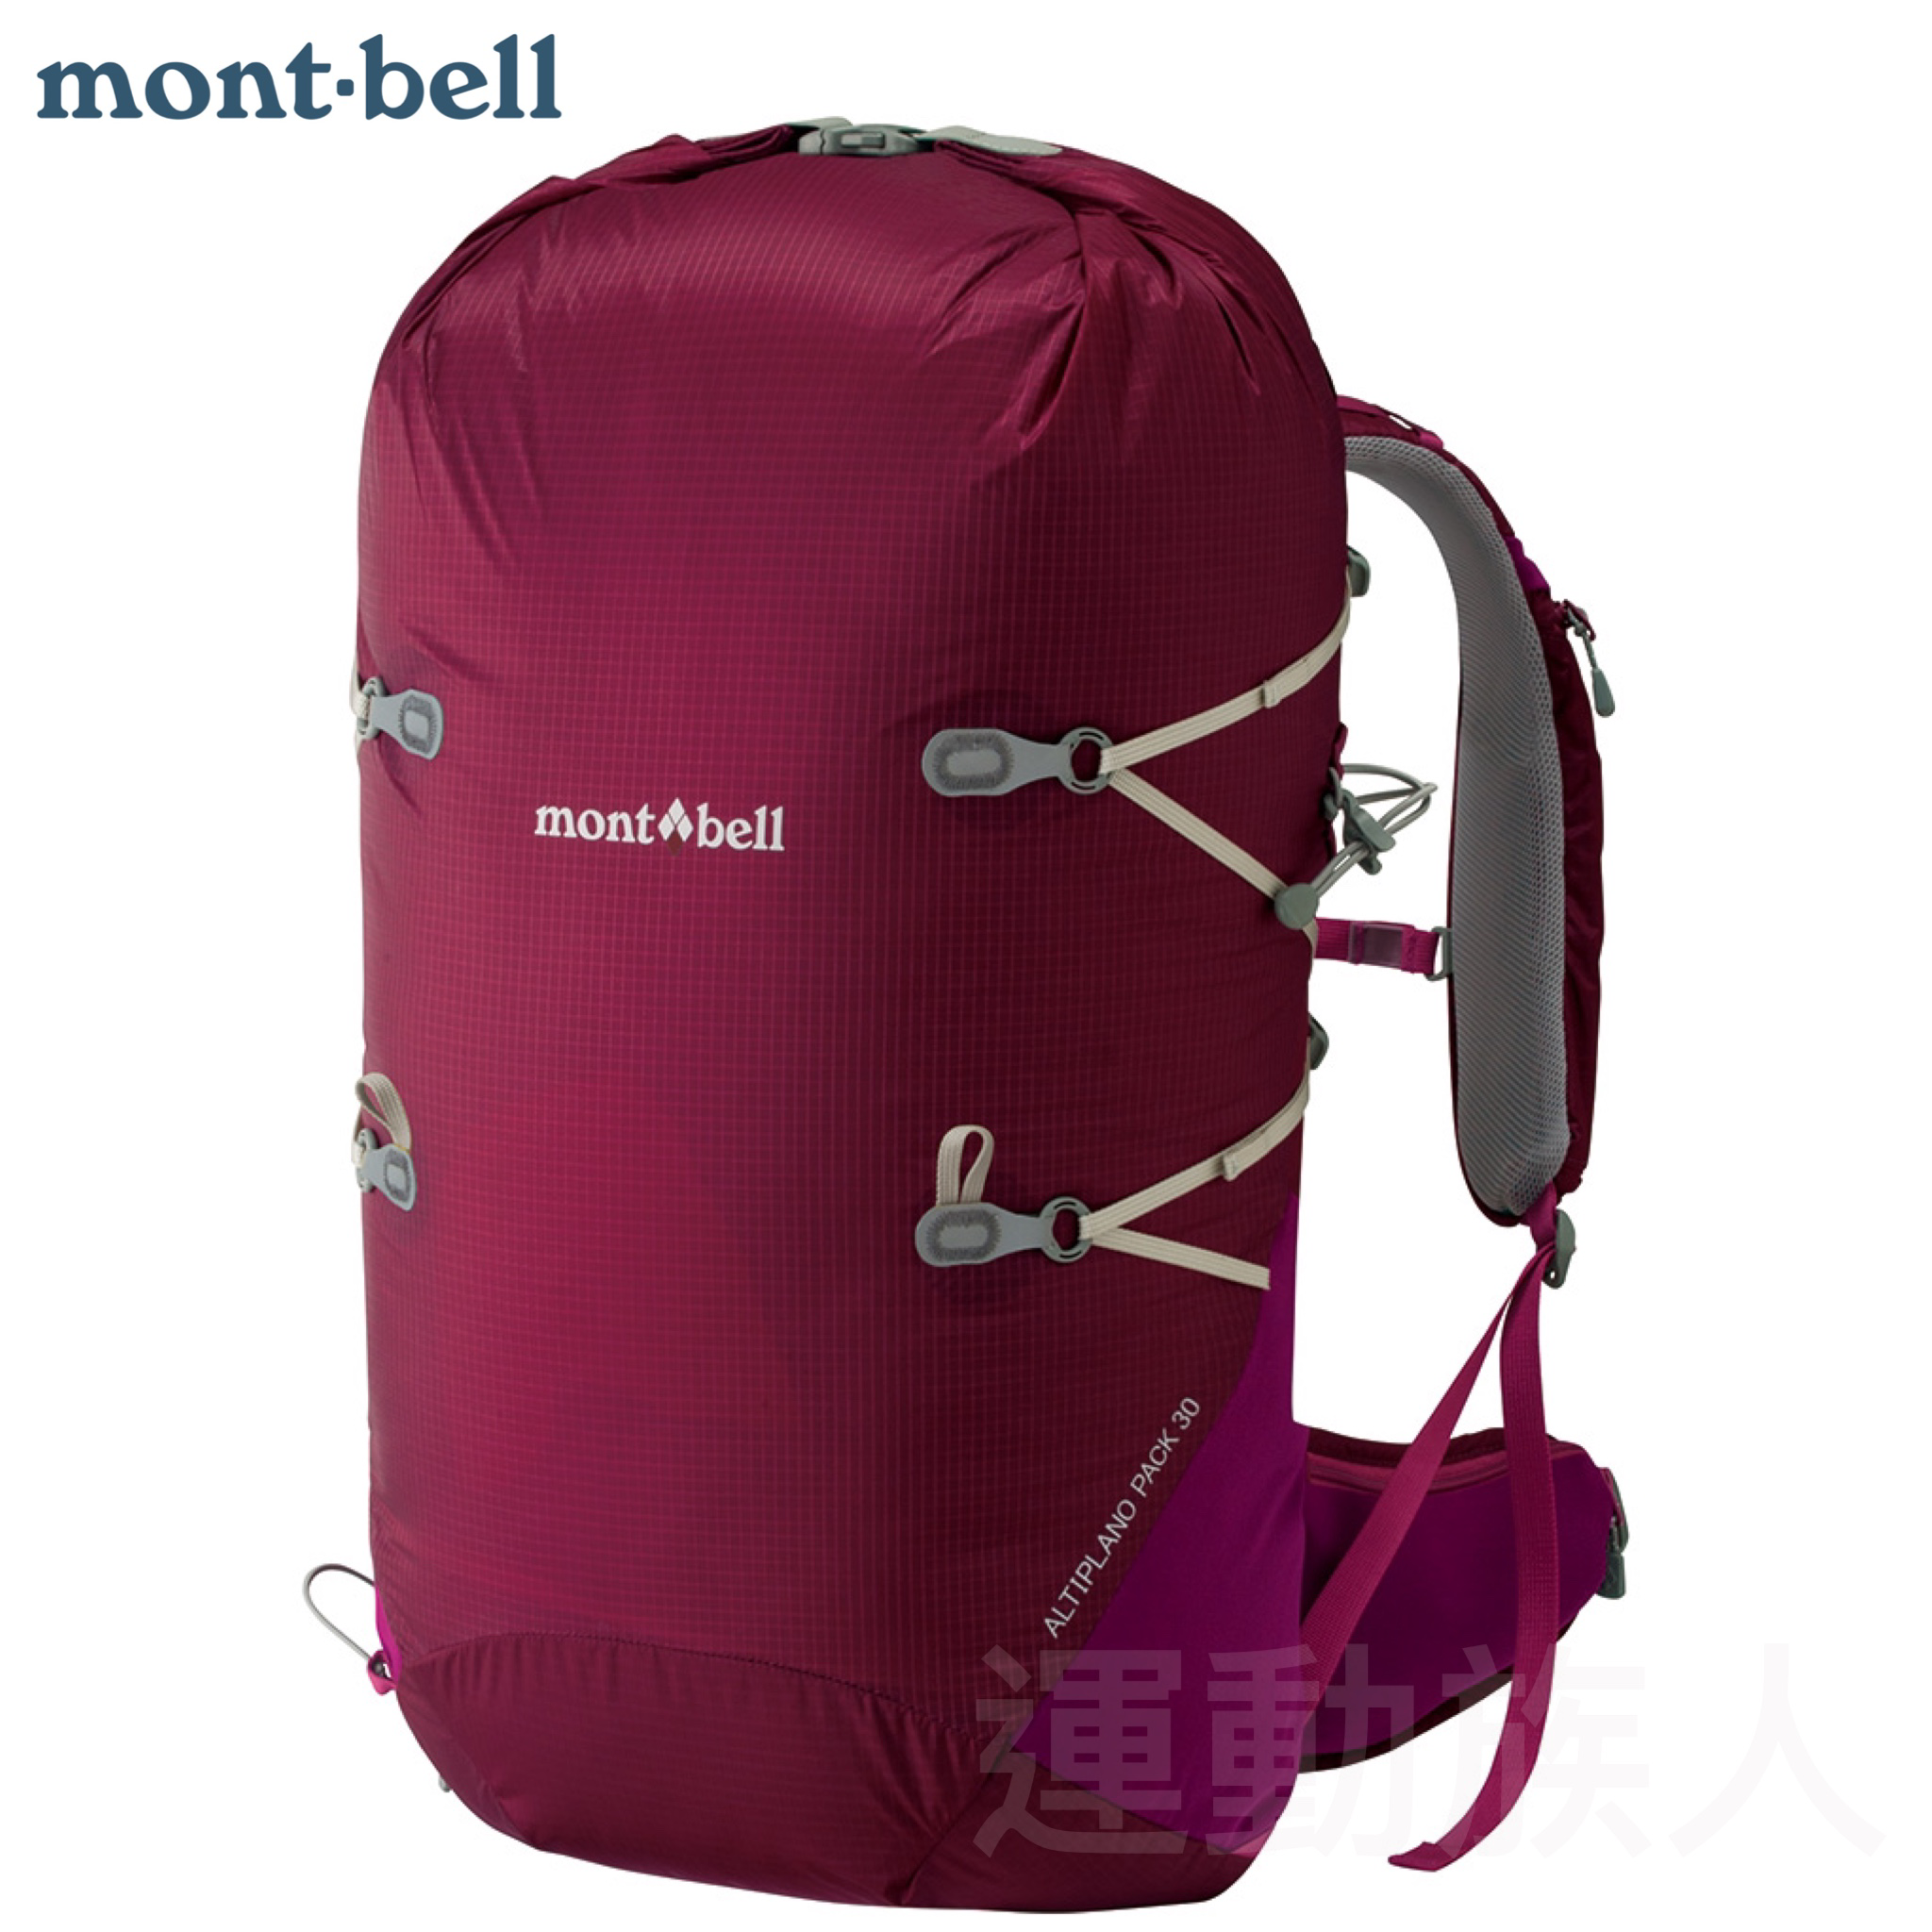 【💥日本直送】30L mont-bell Archiplano Pack 30 女士 超輕背囊 防水 行山用